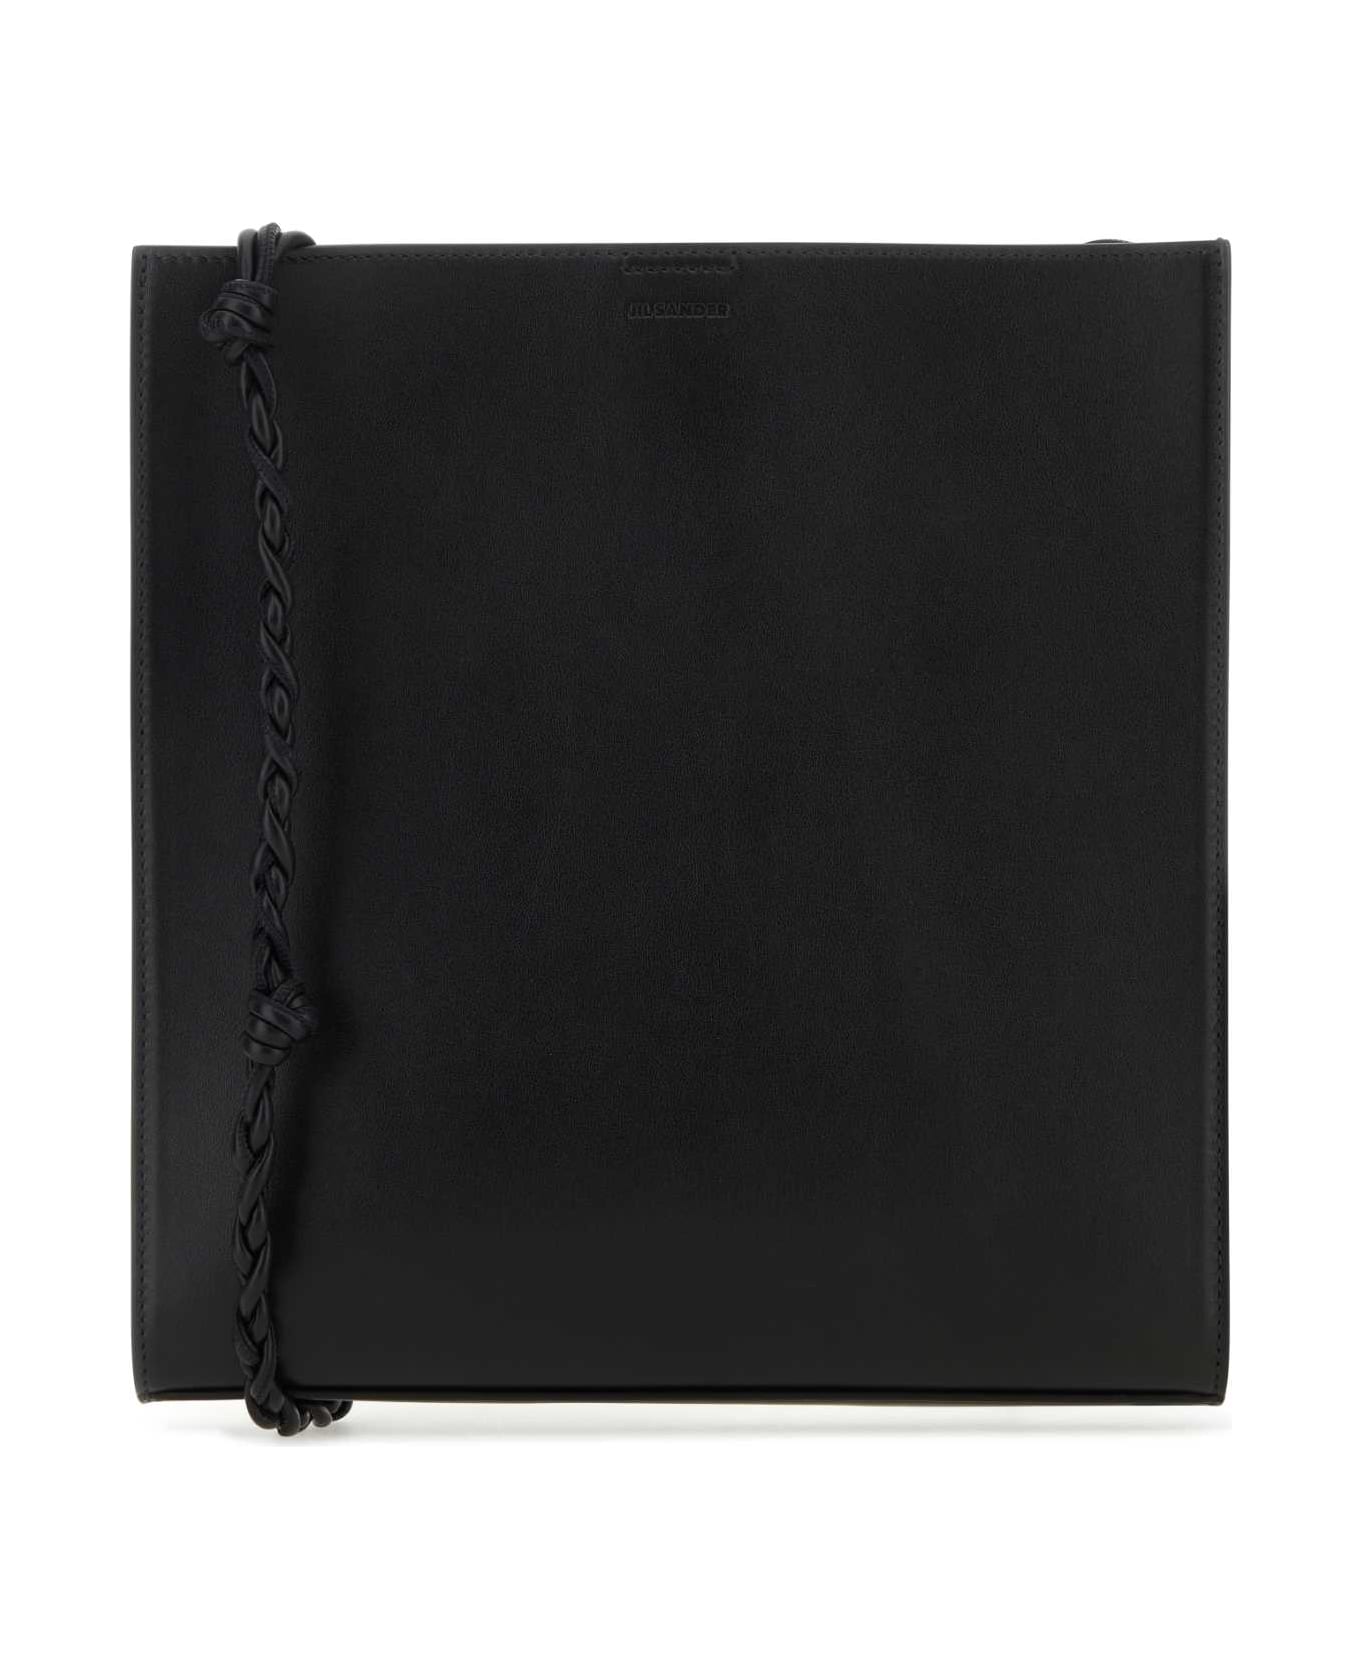 Jil Sander Black Leather Tangle Shoulder Bag - 001